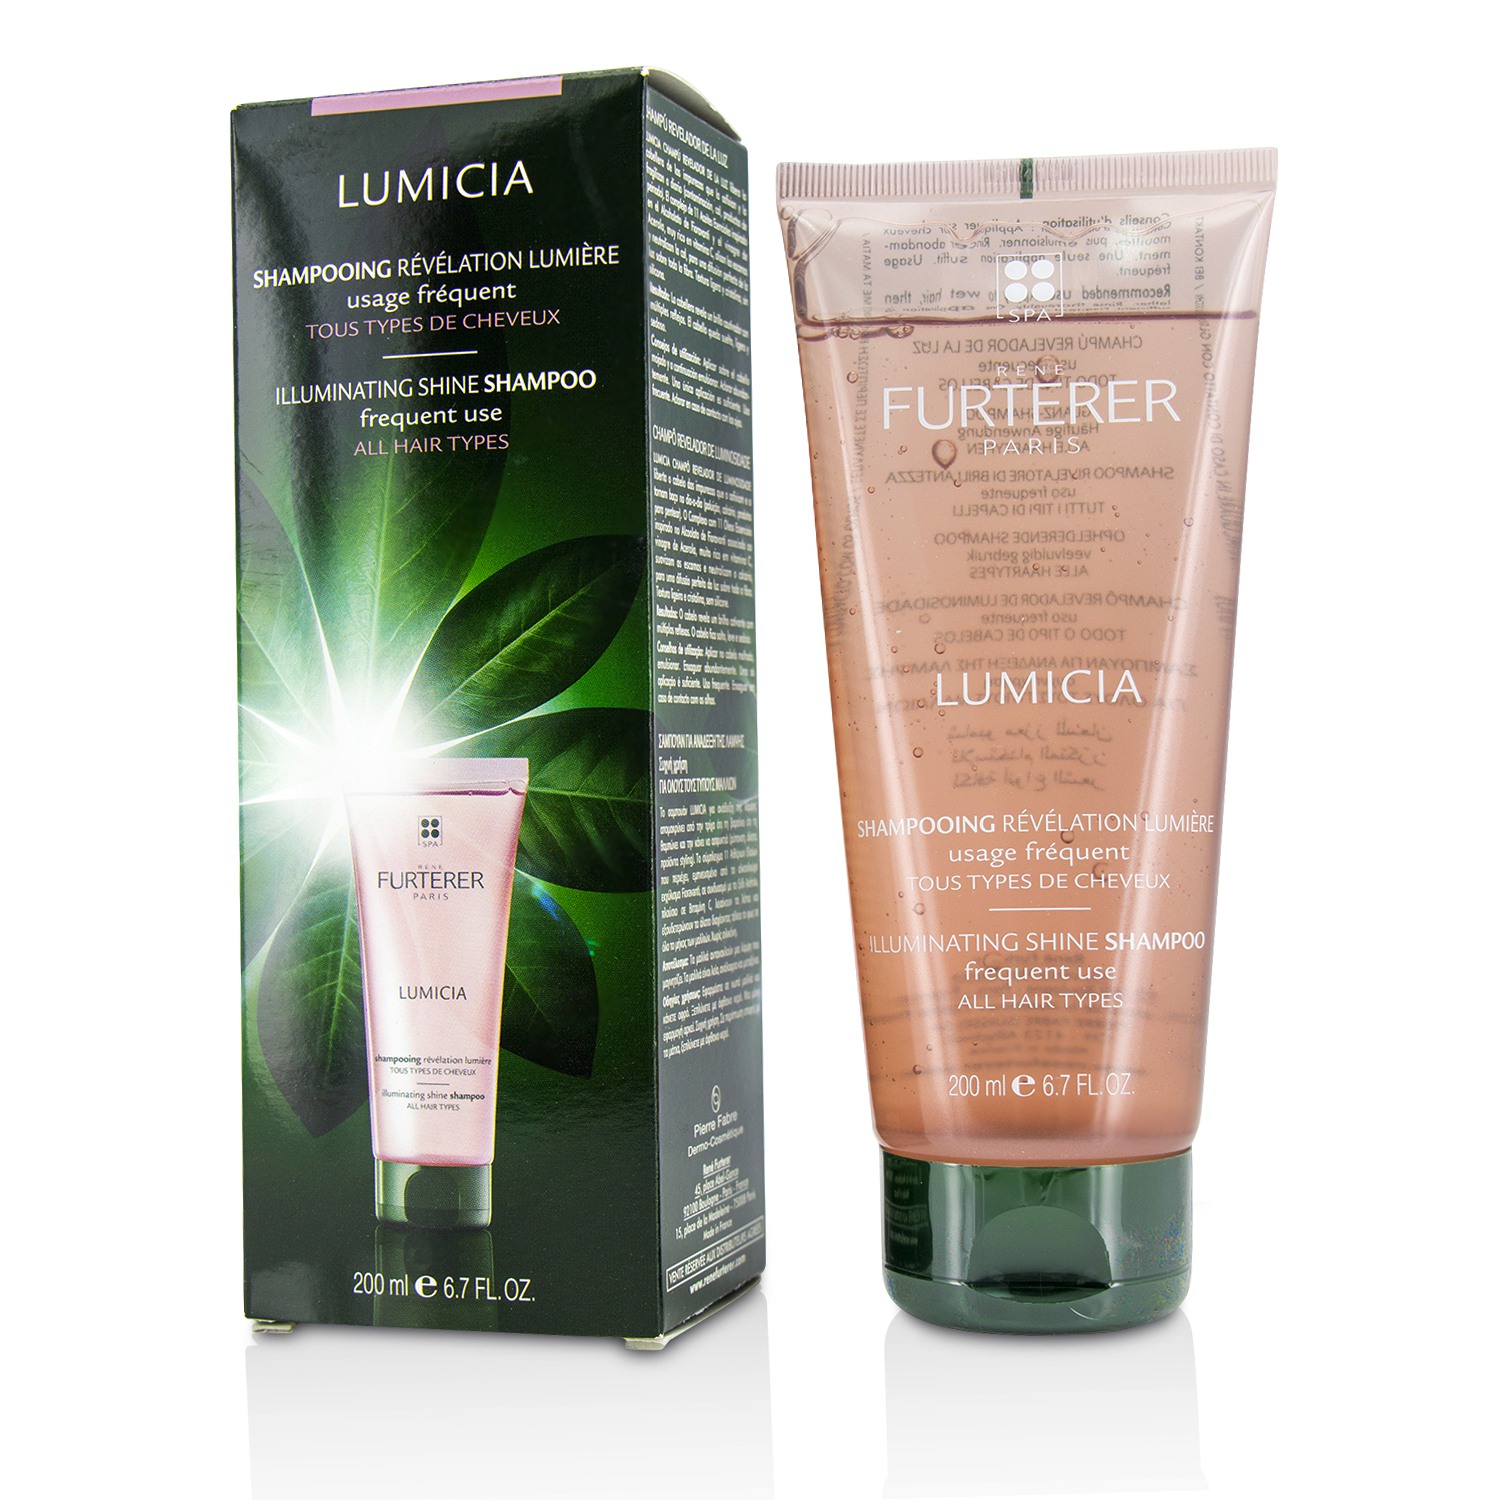 Lumicia Illuminating Shine Shampoo - Frequent Use (All Hair Types) Rene Furterer Image